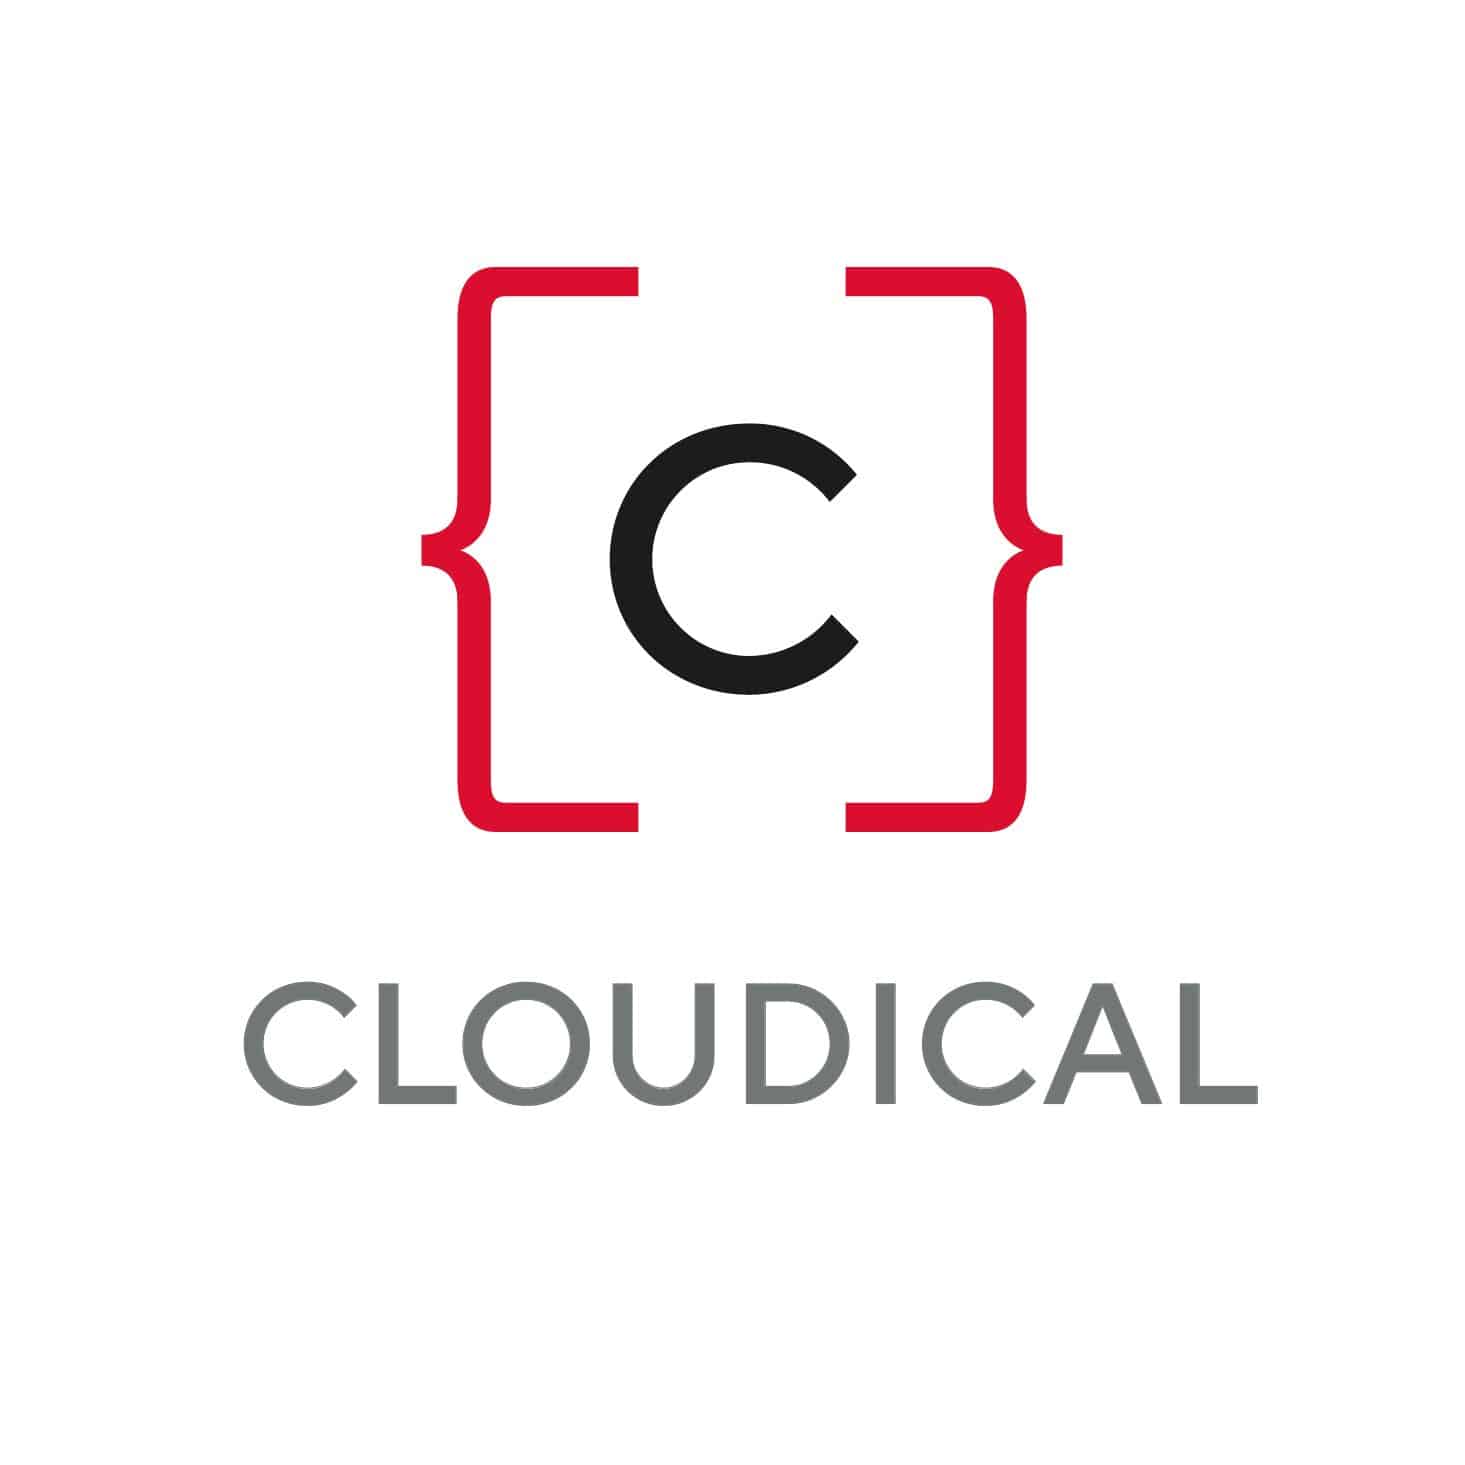 Cloudical Deutschland GmbH